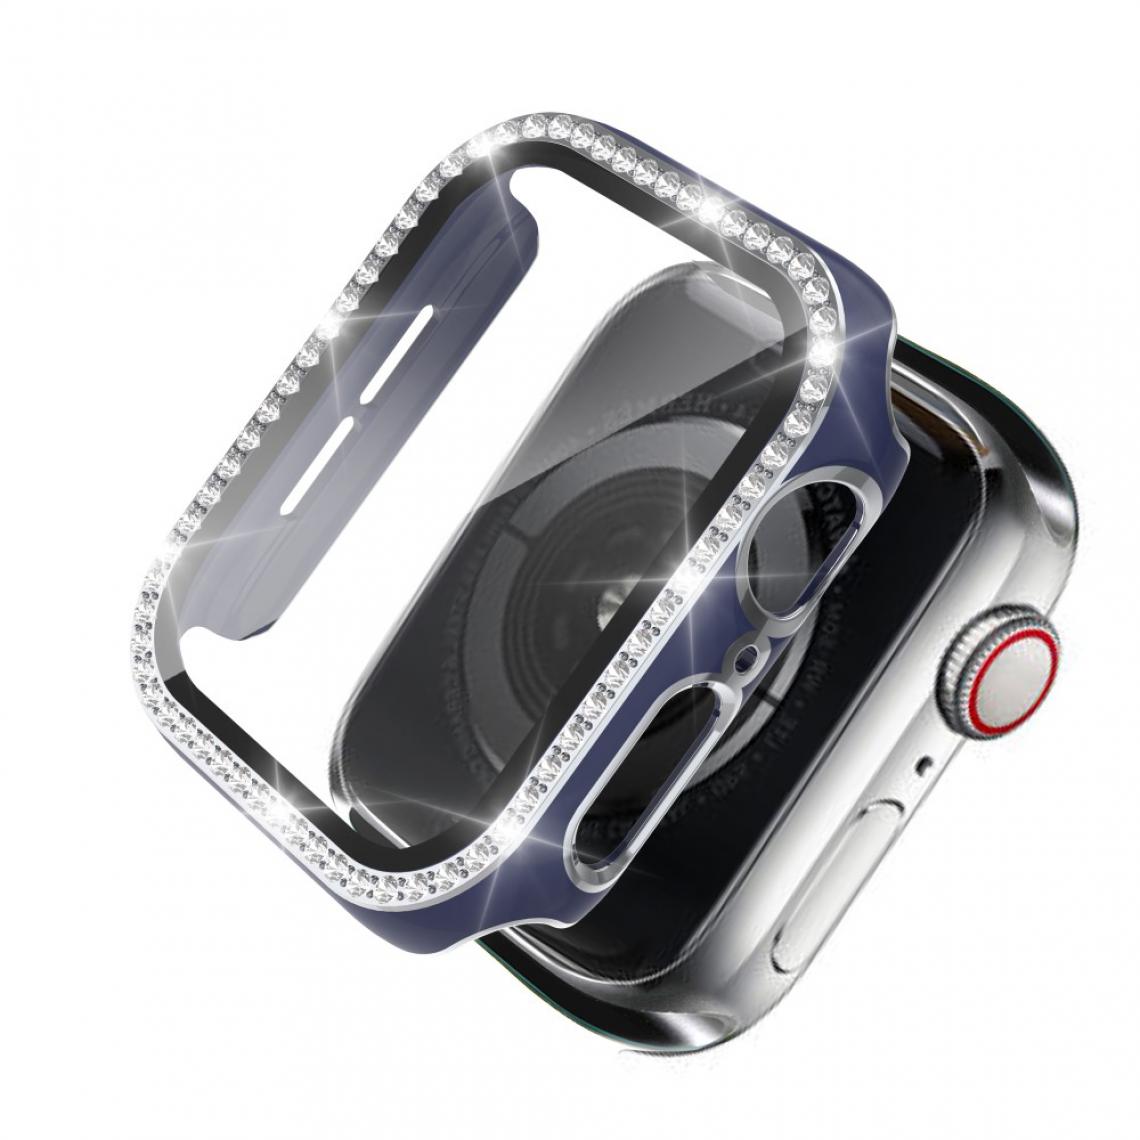 Other - Coque en TPU Cristal de galvanoplastie bicolore bleu/argent pour votre Apple Watch 1/2/3 38mm - Accessoires bracelet connecté